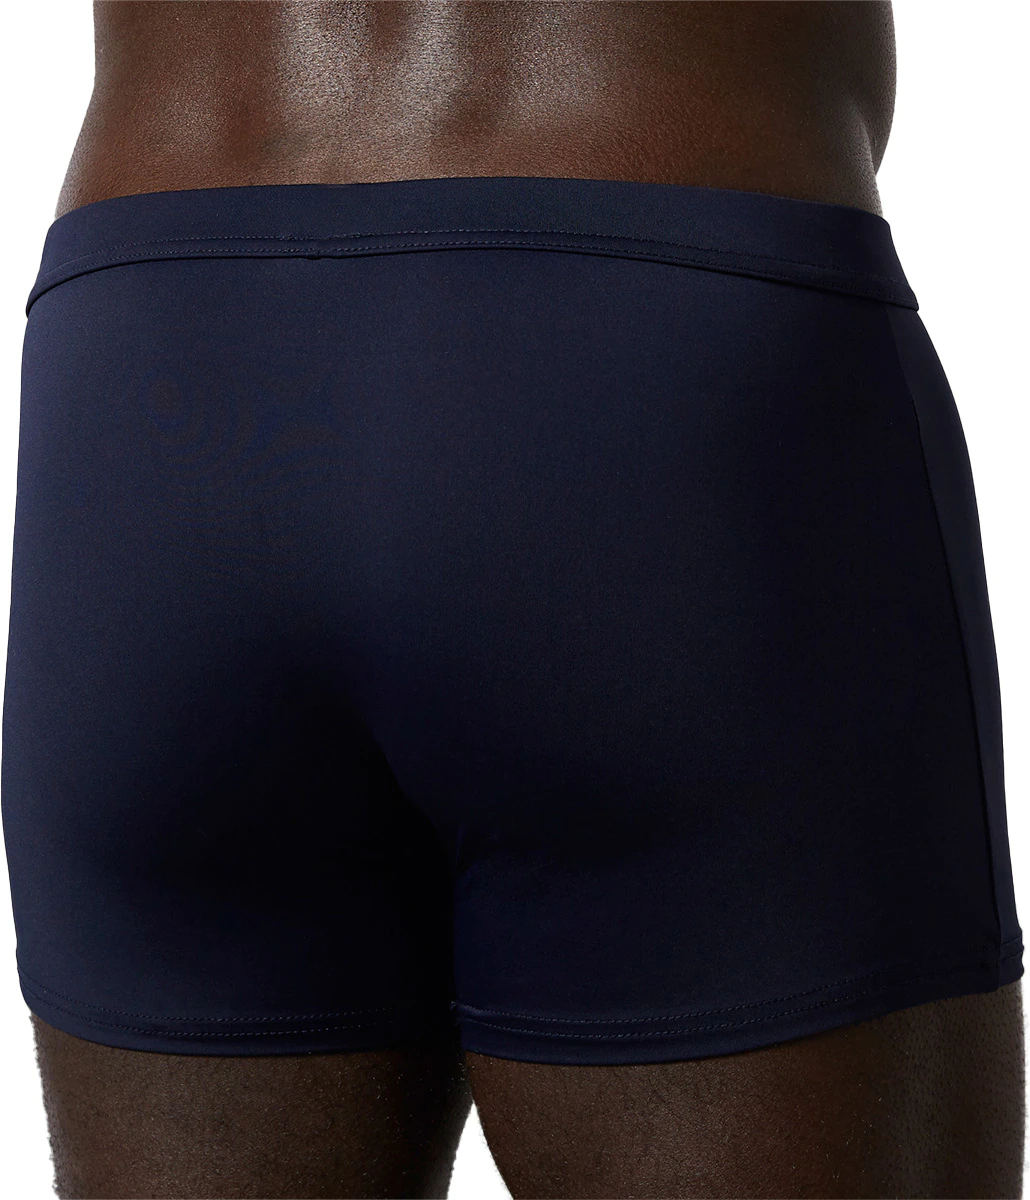 Bruno Banani Pack of 4 Micro Simply Pants / Shorts